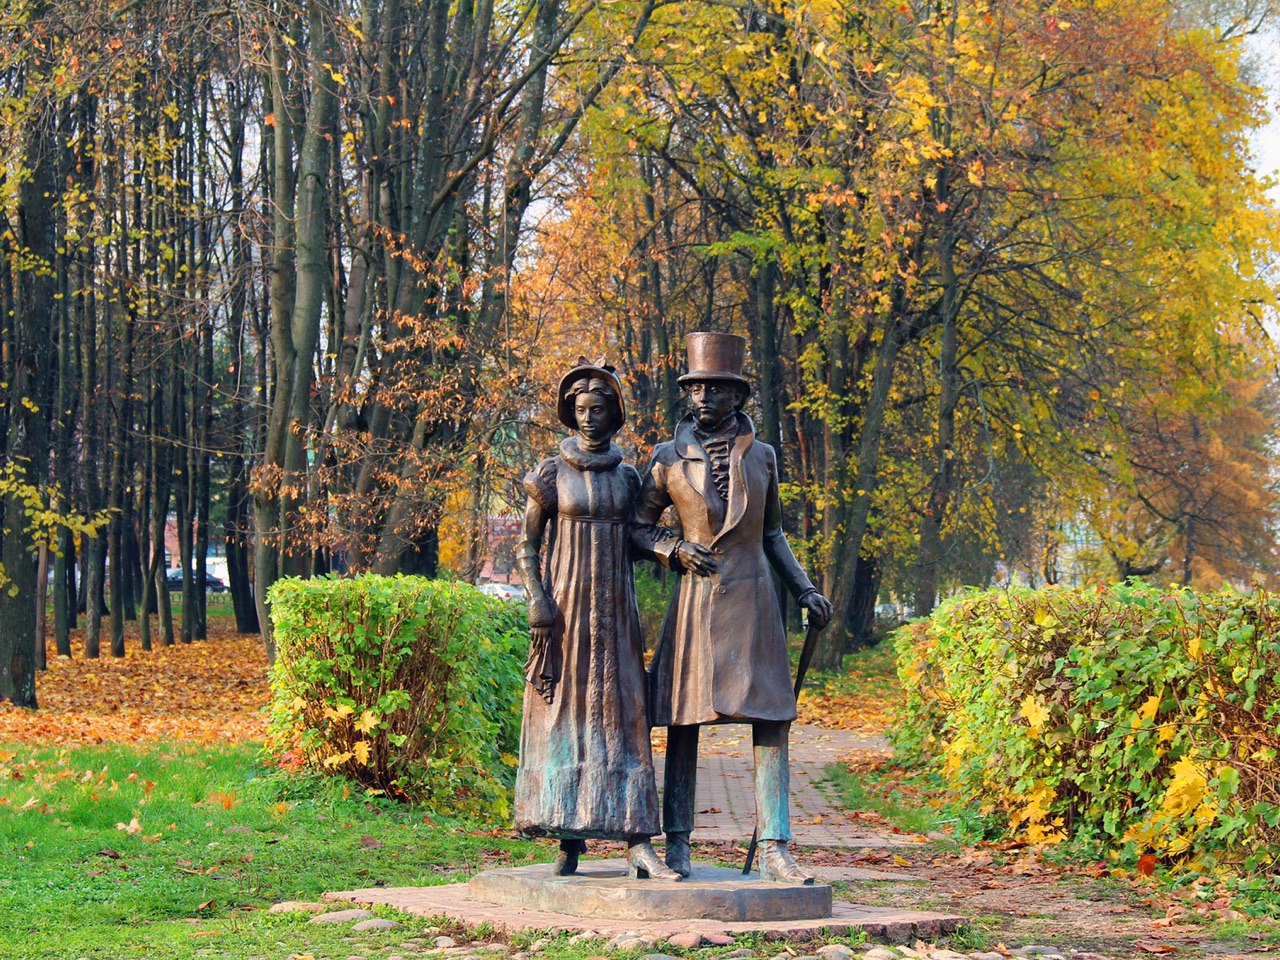 Ансамбль скульптур дмитровчан разных сословий «Горожане», установили в 2003 году